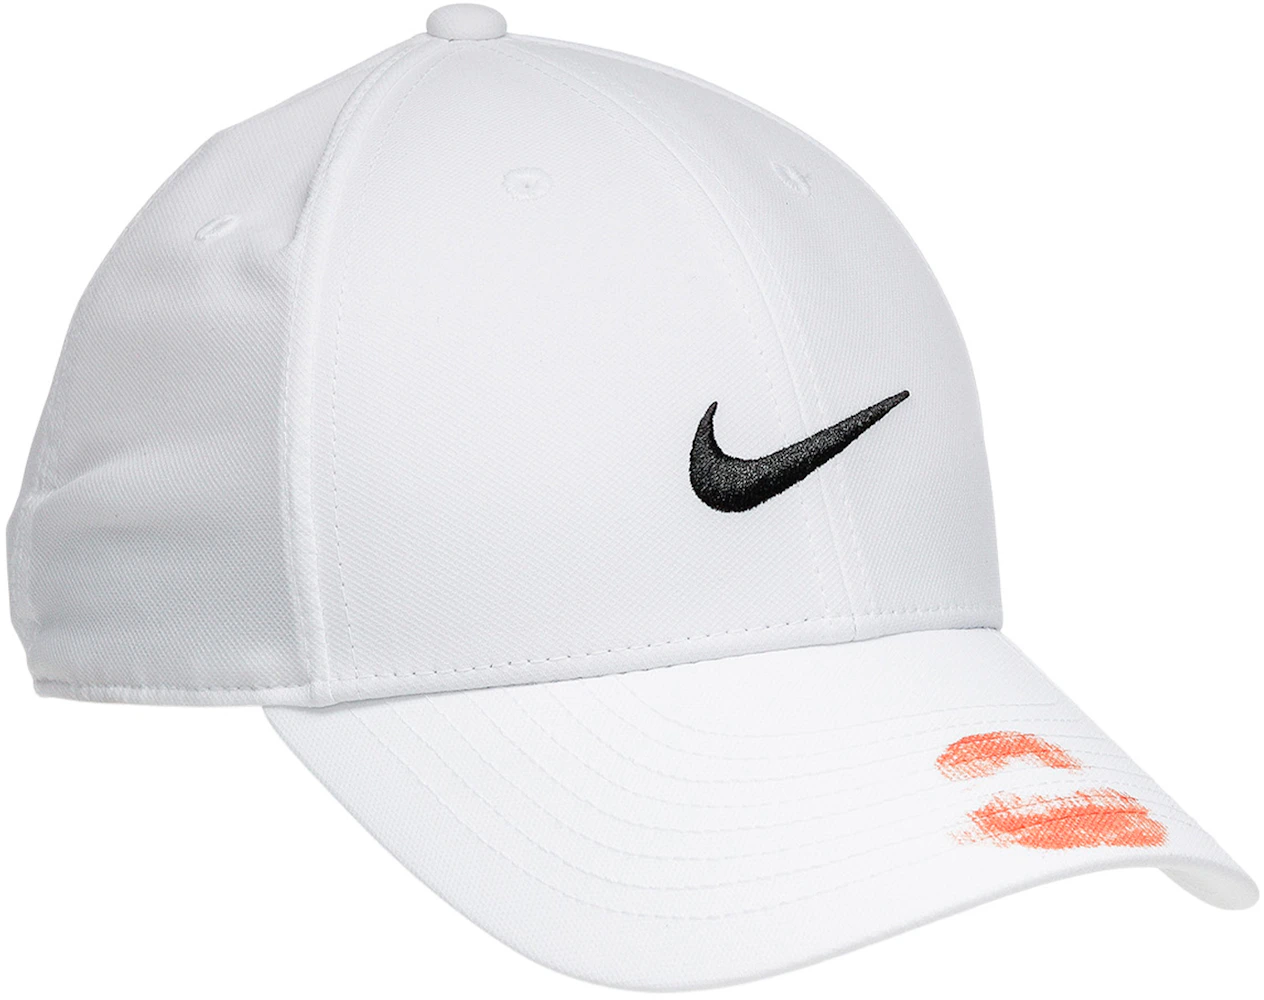 Nike x Drake Certified Lover Boy Hat White Men's - FW20 - US